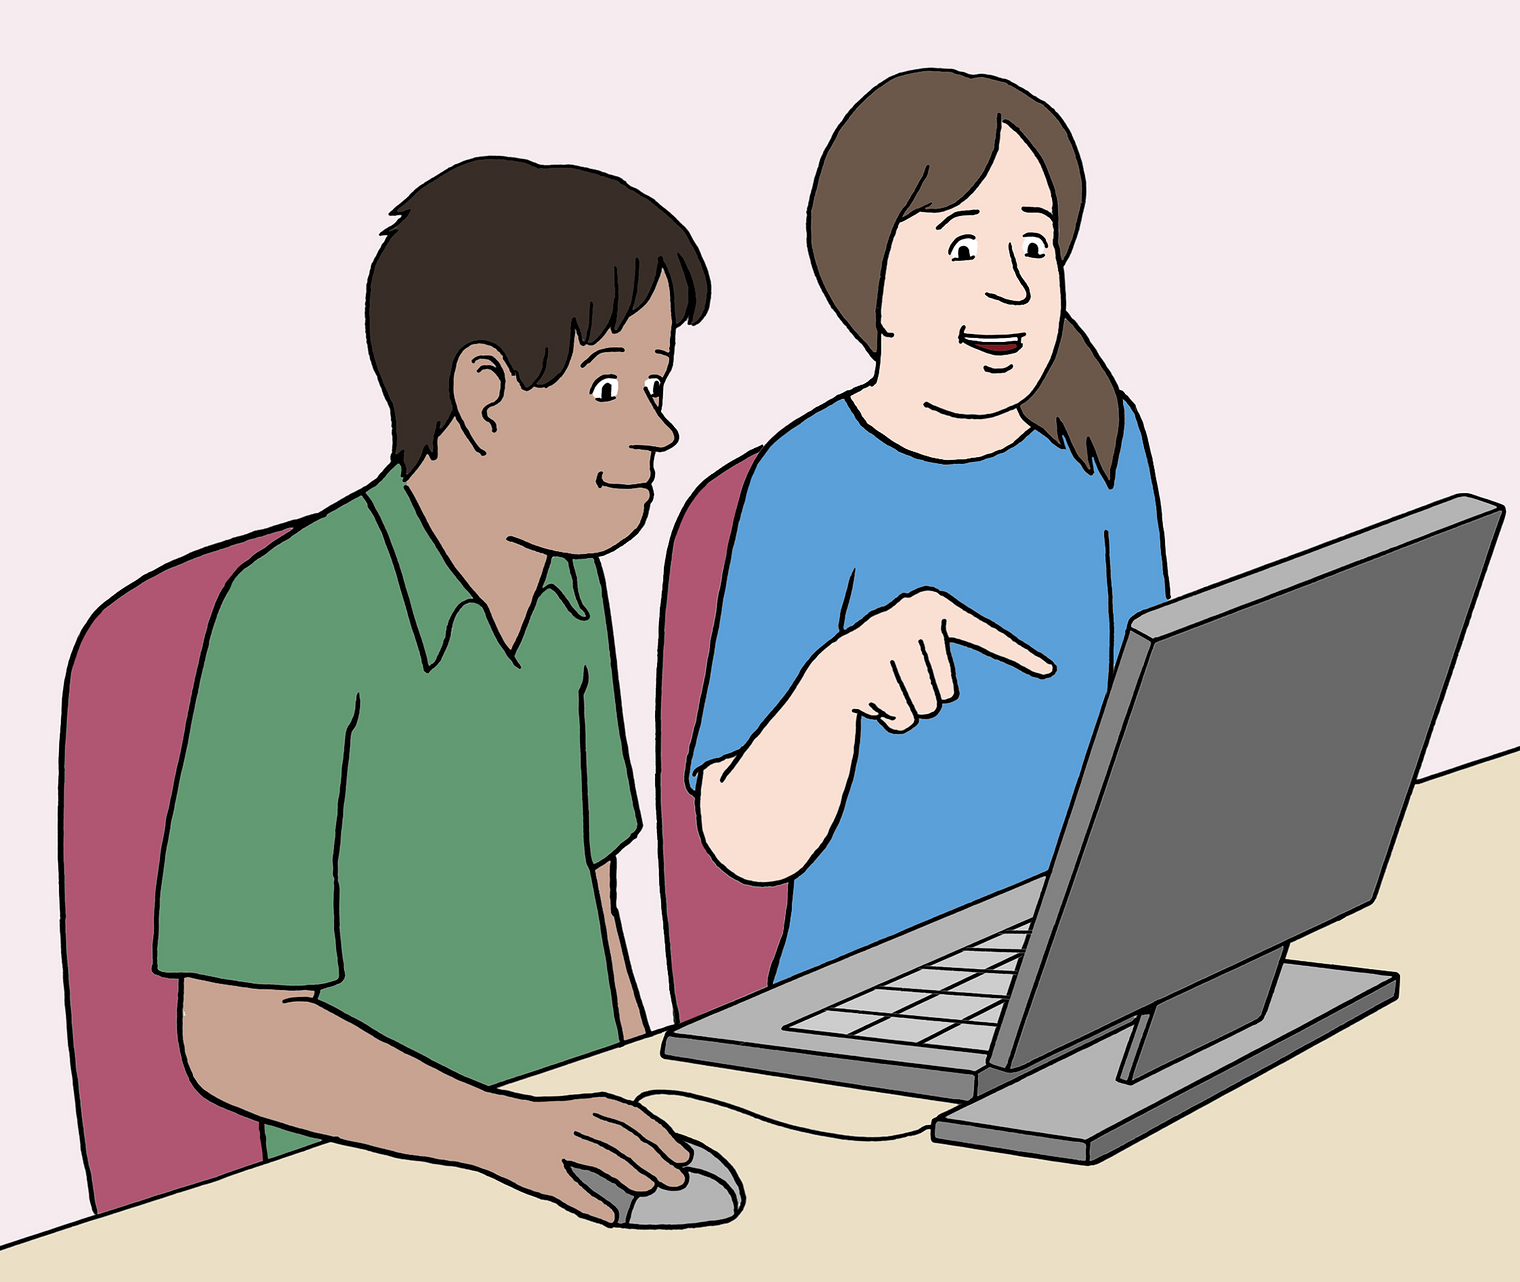 Frau und Mann sitzen am Tisch vor dem Computer, die Frau zeigt auf den Bildschirm und spricht, der Mann bedient die Maus